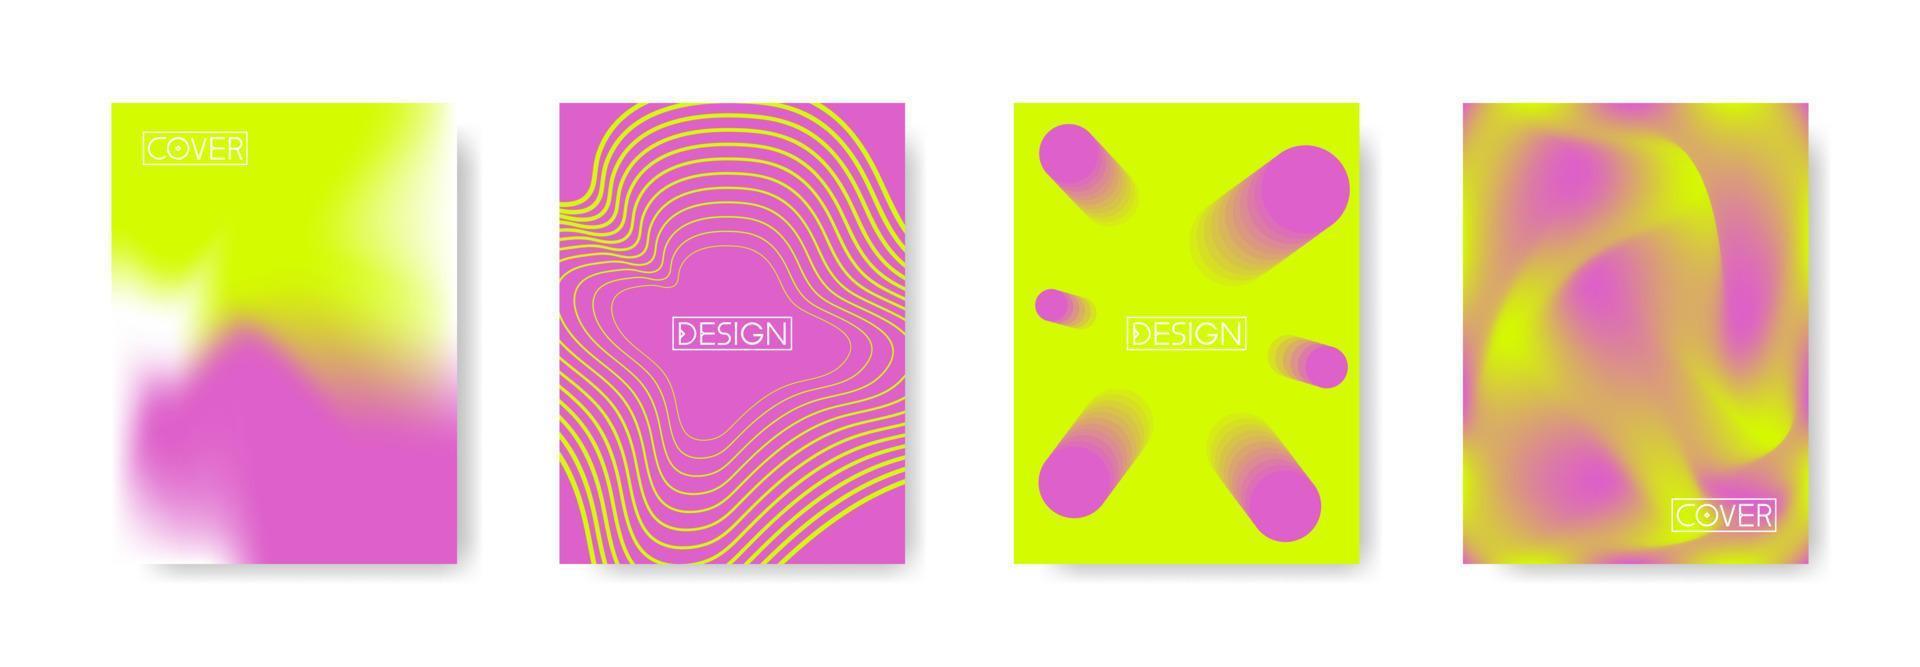 conjunto de capas mínimas abstratas design em cores violetas e ácidas brilhantes. padrões geométricos futuros. ilustração colorida em formato a4 vertical. gradiente de malha, linhas dinâmicas e formas 3D vetor